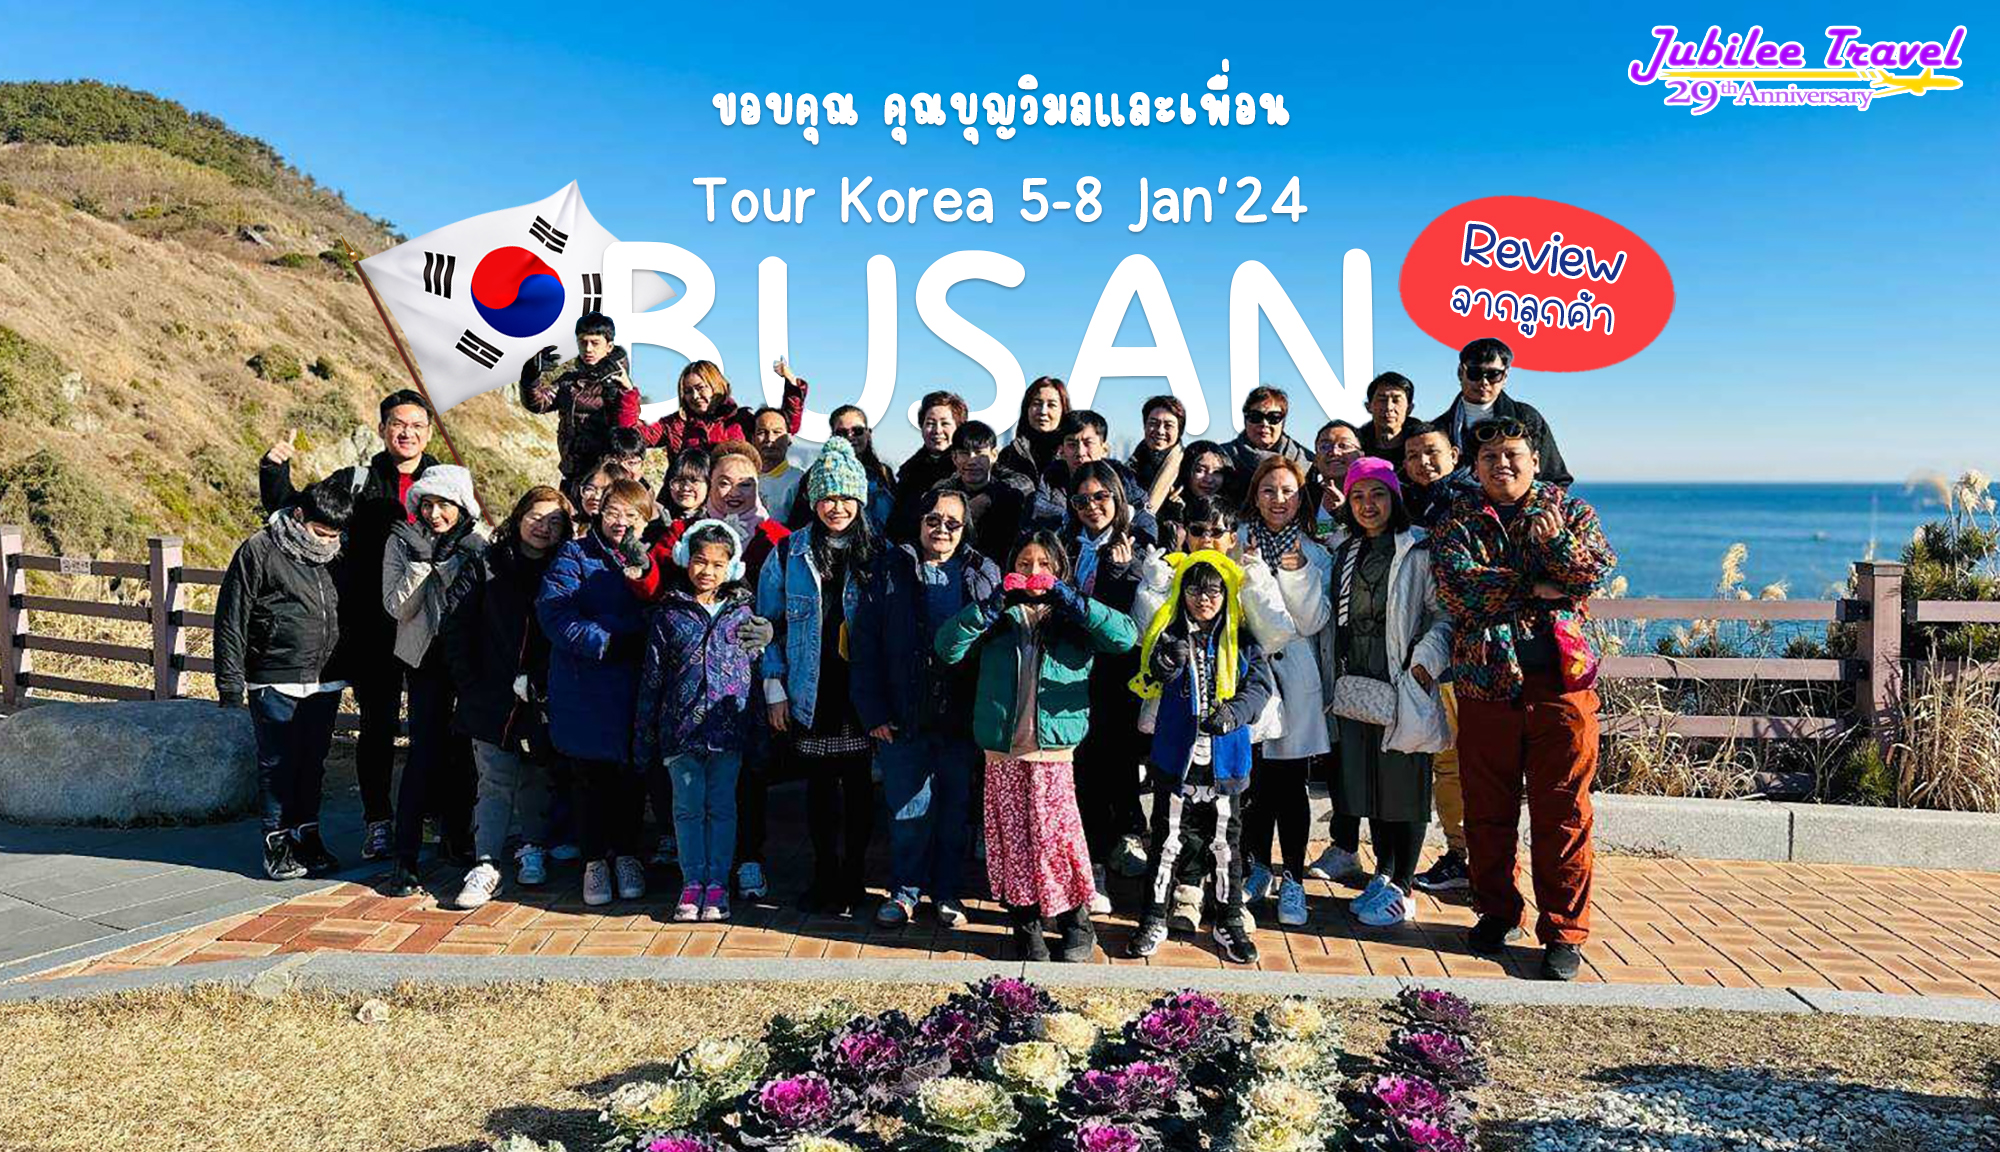 รีวิวจากคุณลูกค้า คุณบุญวิมลและเพื่อน Tour Korea ปูซาน 5-8 JAN’24